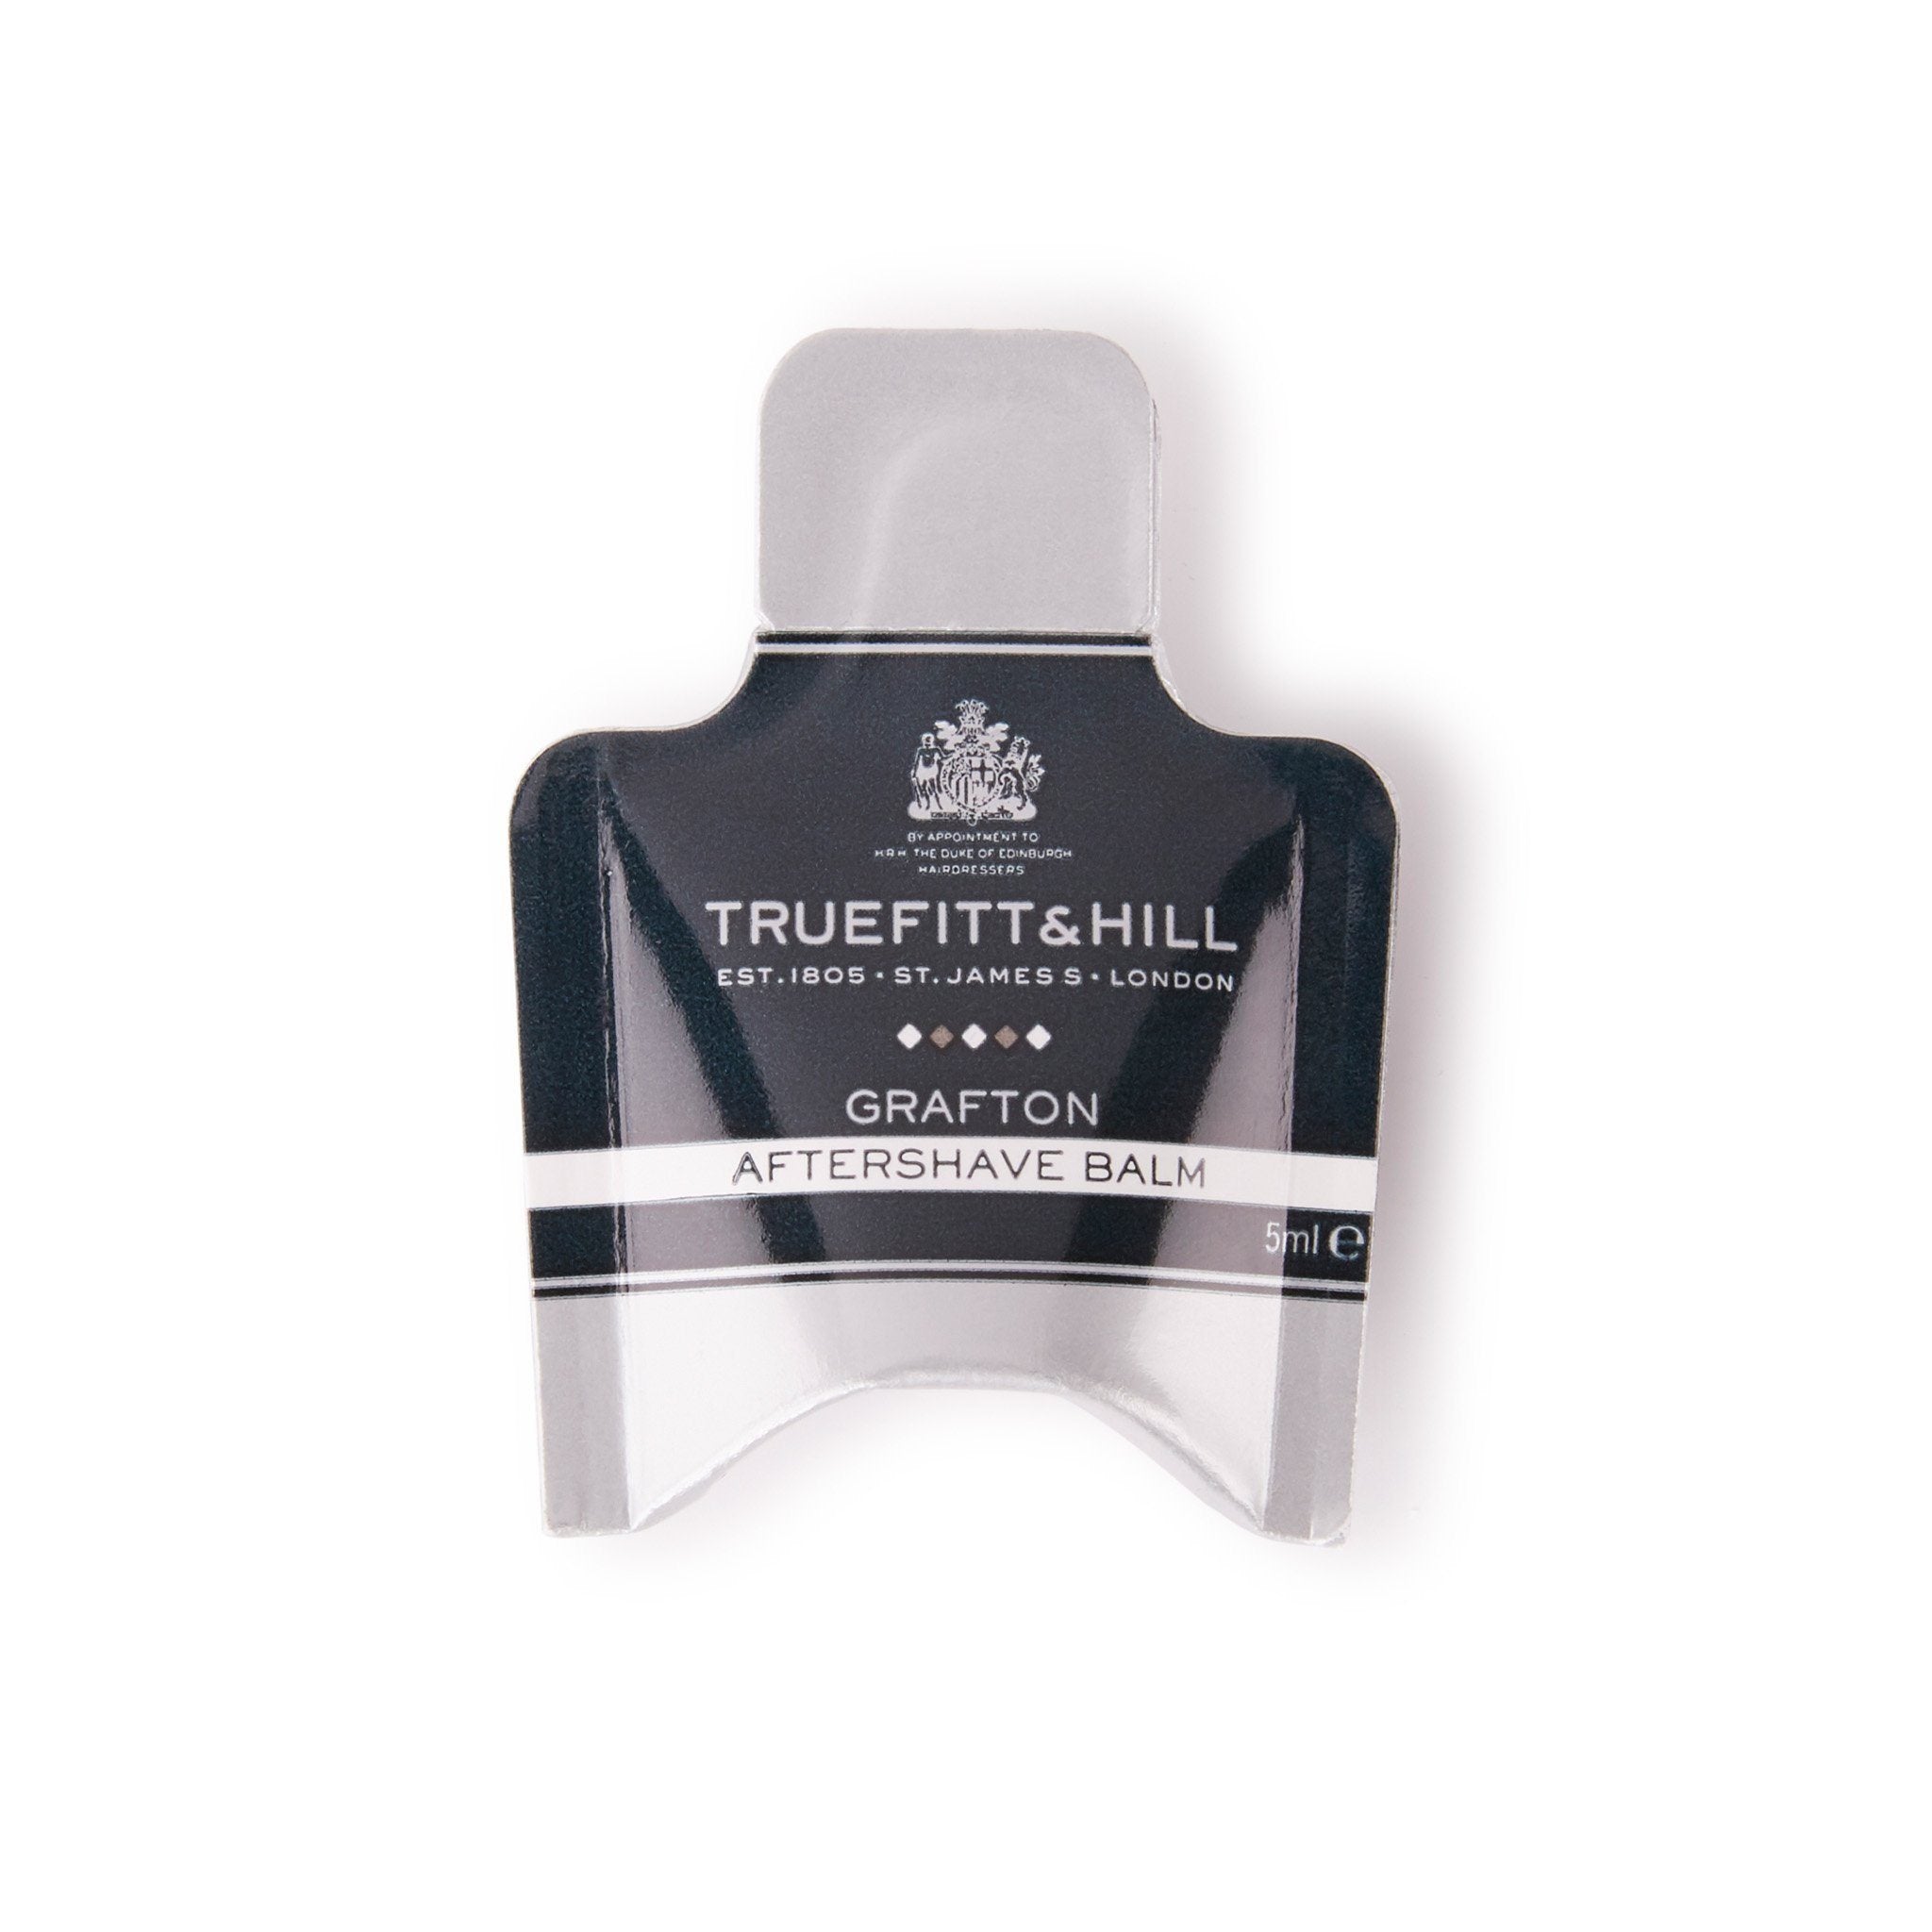 Truefitt & Hill Aftershave Balm vareprøve Grafton